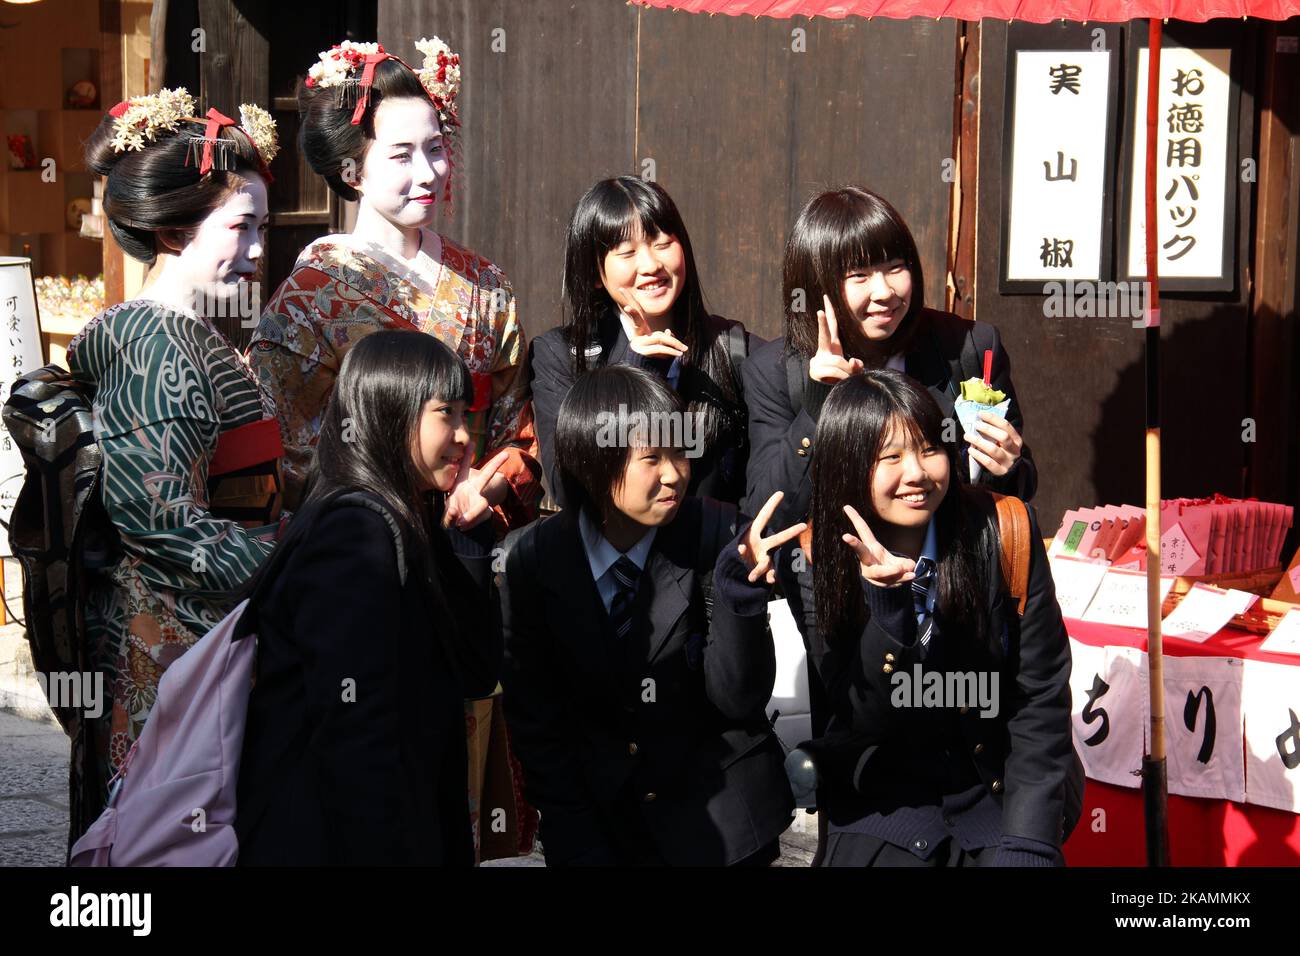 Des femmes asiatiques vêtues de geishas posant avec un groupe de lycéennes japonaises à Kyoto, au Japon Banque D'Images